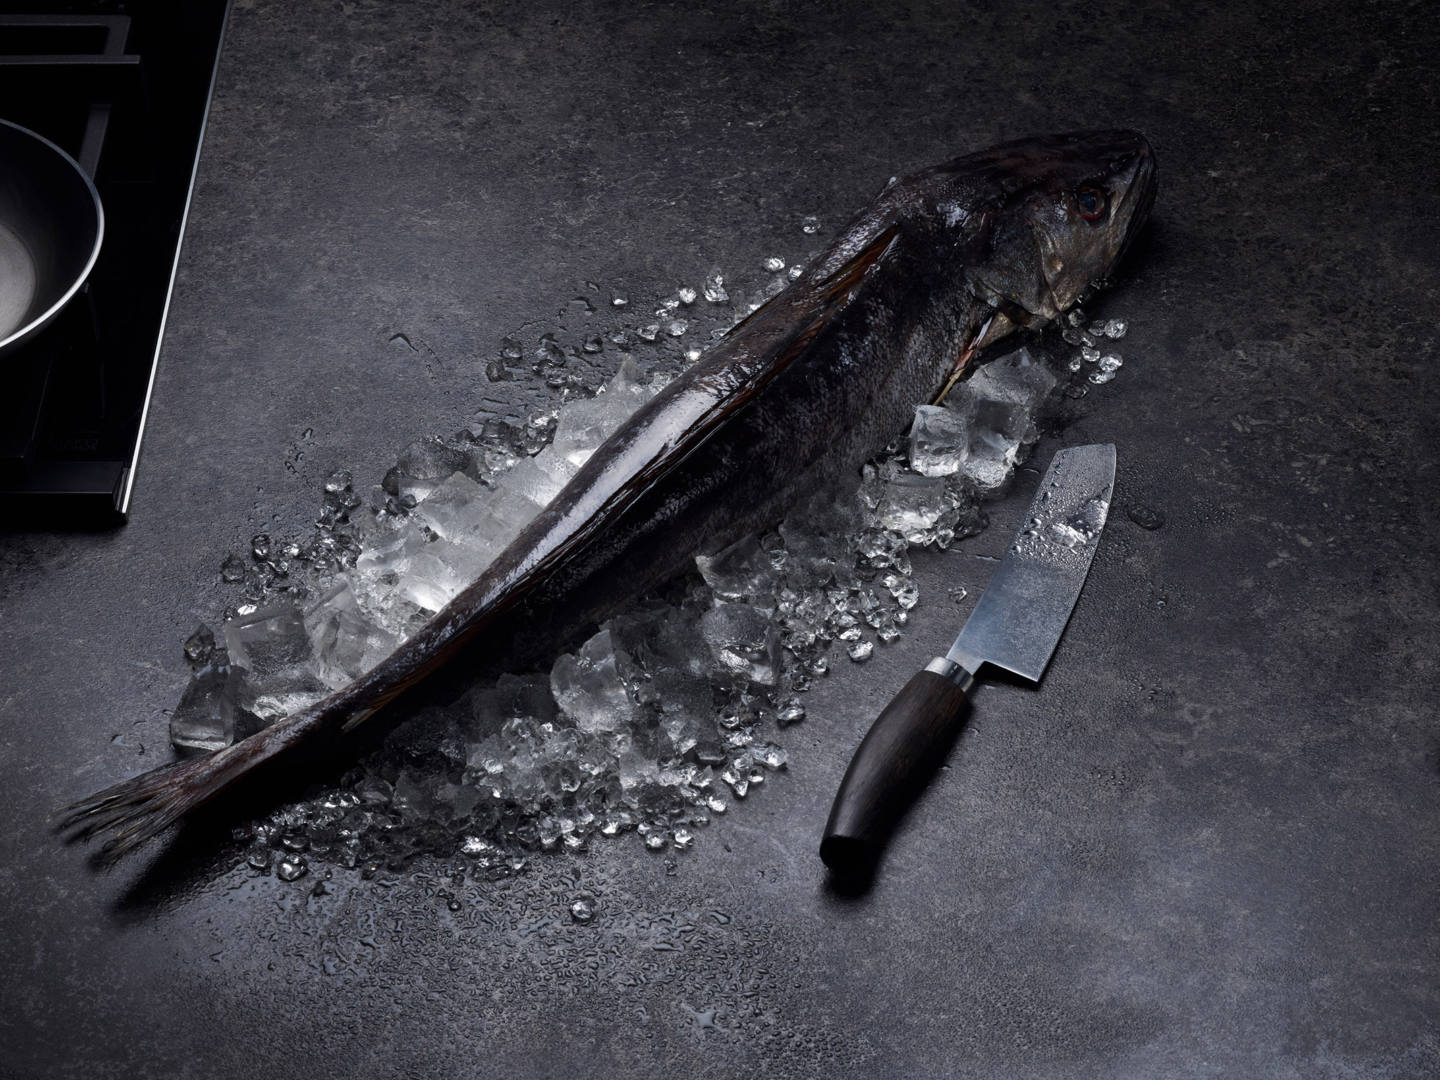  Seehecht auf Eisbett in einer dunklen Küche, daneben ein Messer zur Zubereitung - Fotografie und Konzeption durch Studio hackenberg für ChefsCulinar 